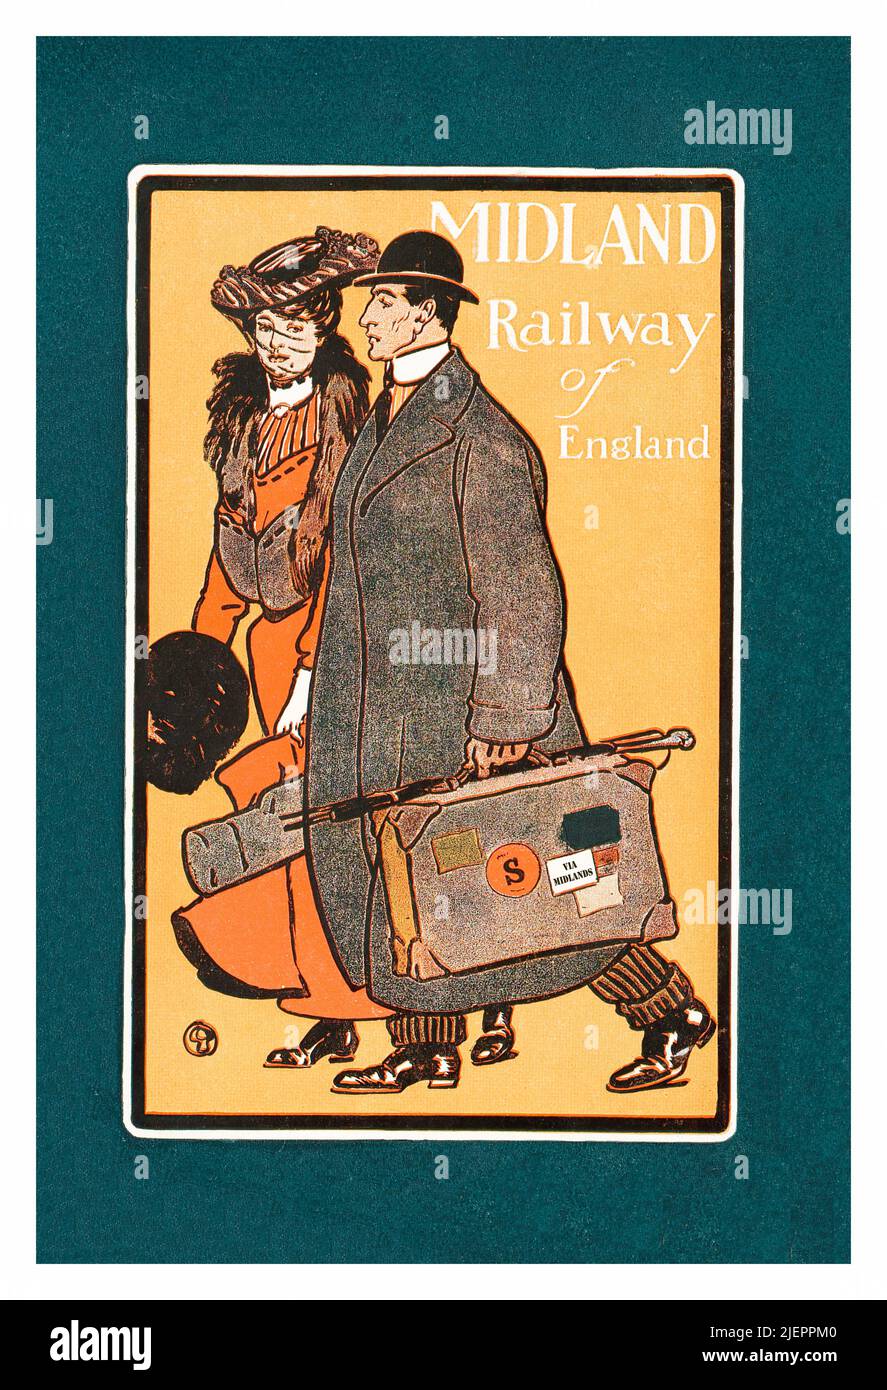 Eine Illustration aus dem frühen 20.. Jahrhundert von Edward Penfield (1866-1925) für eine von der englischen Midland Railway in Auftrag gegebene Werbung, in der ein Paar auf Zugfahrt ist. Stockfoto